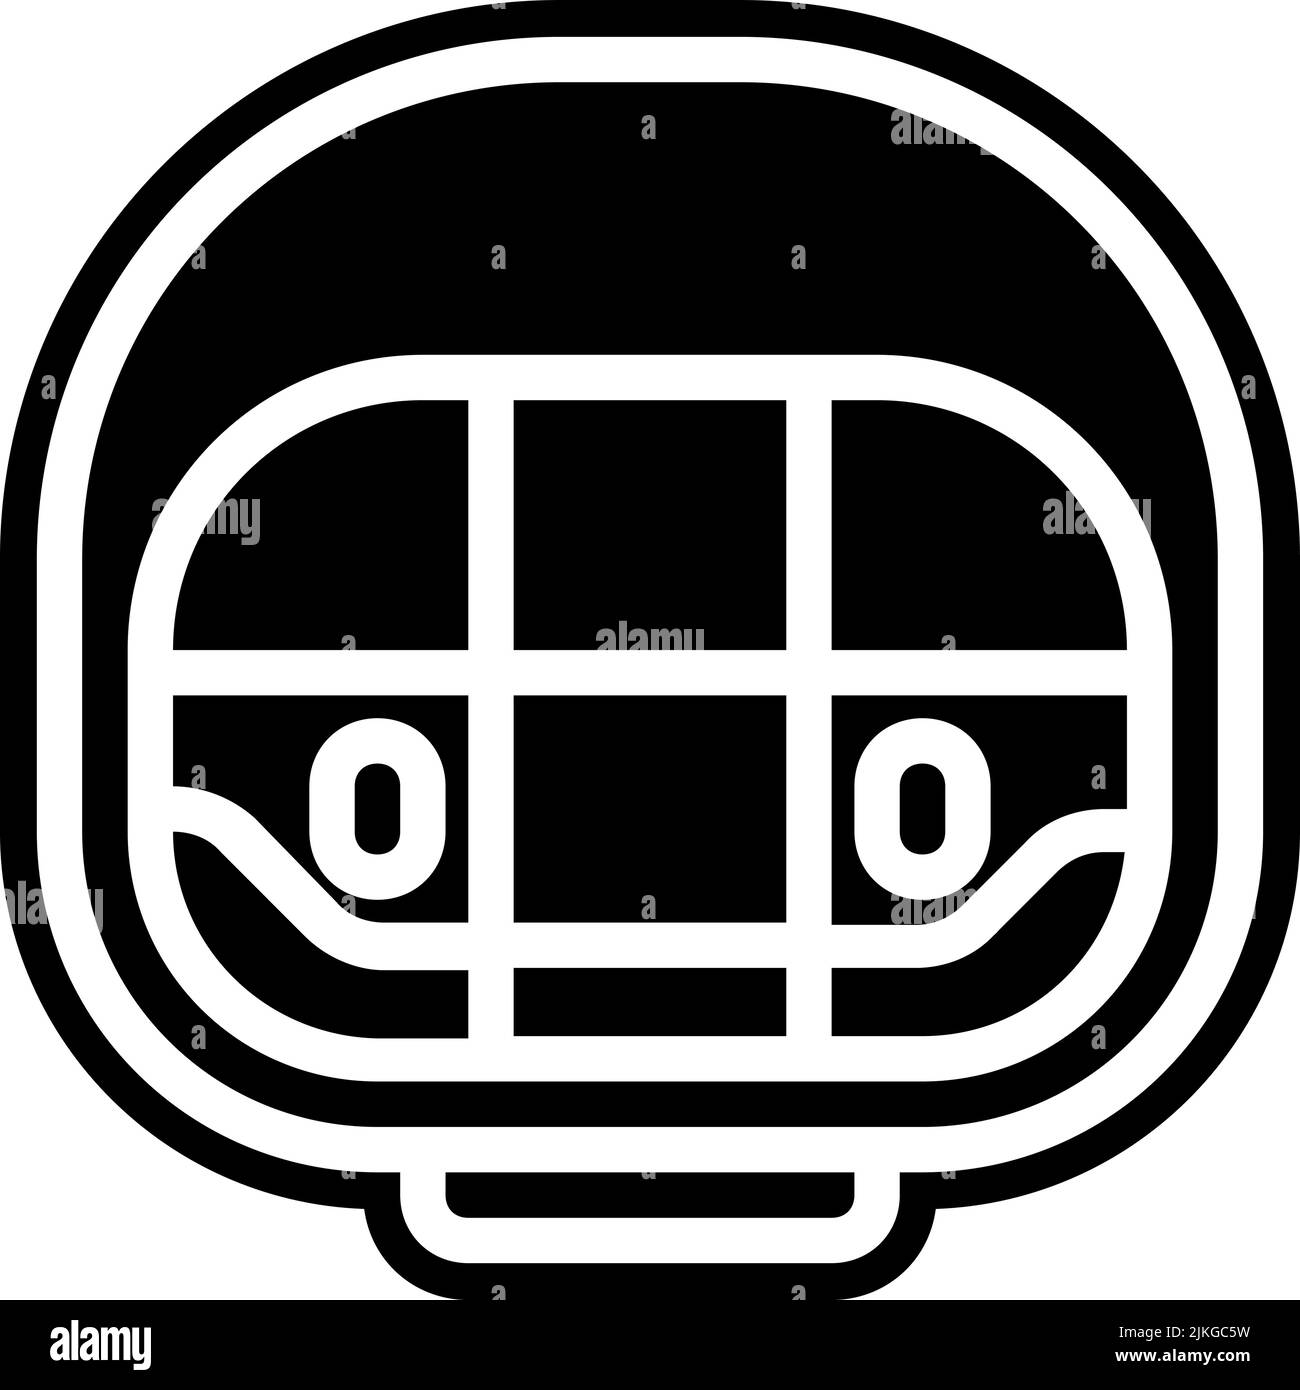 Eishockey Helm Symbol schwarz Vektor-Illustration. Stock Vektor